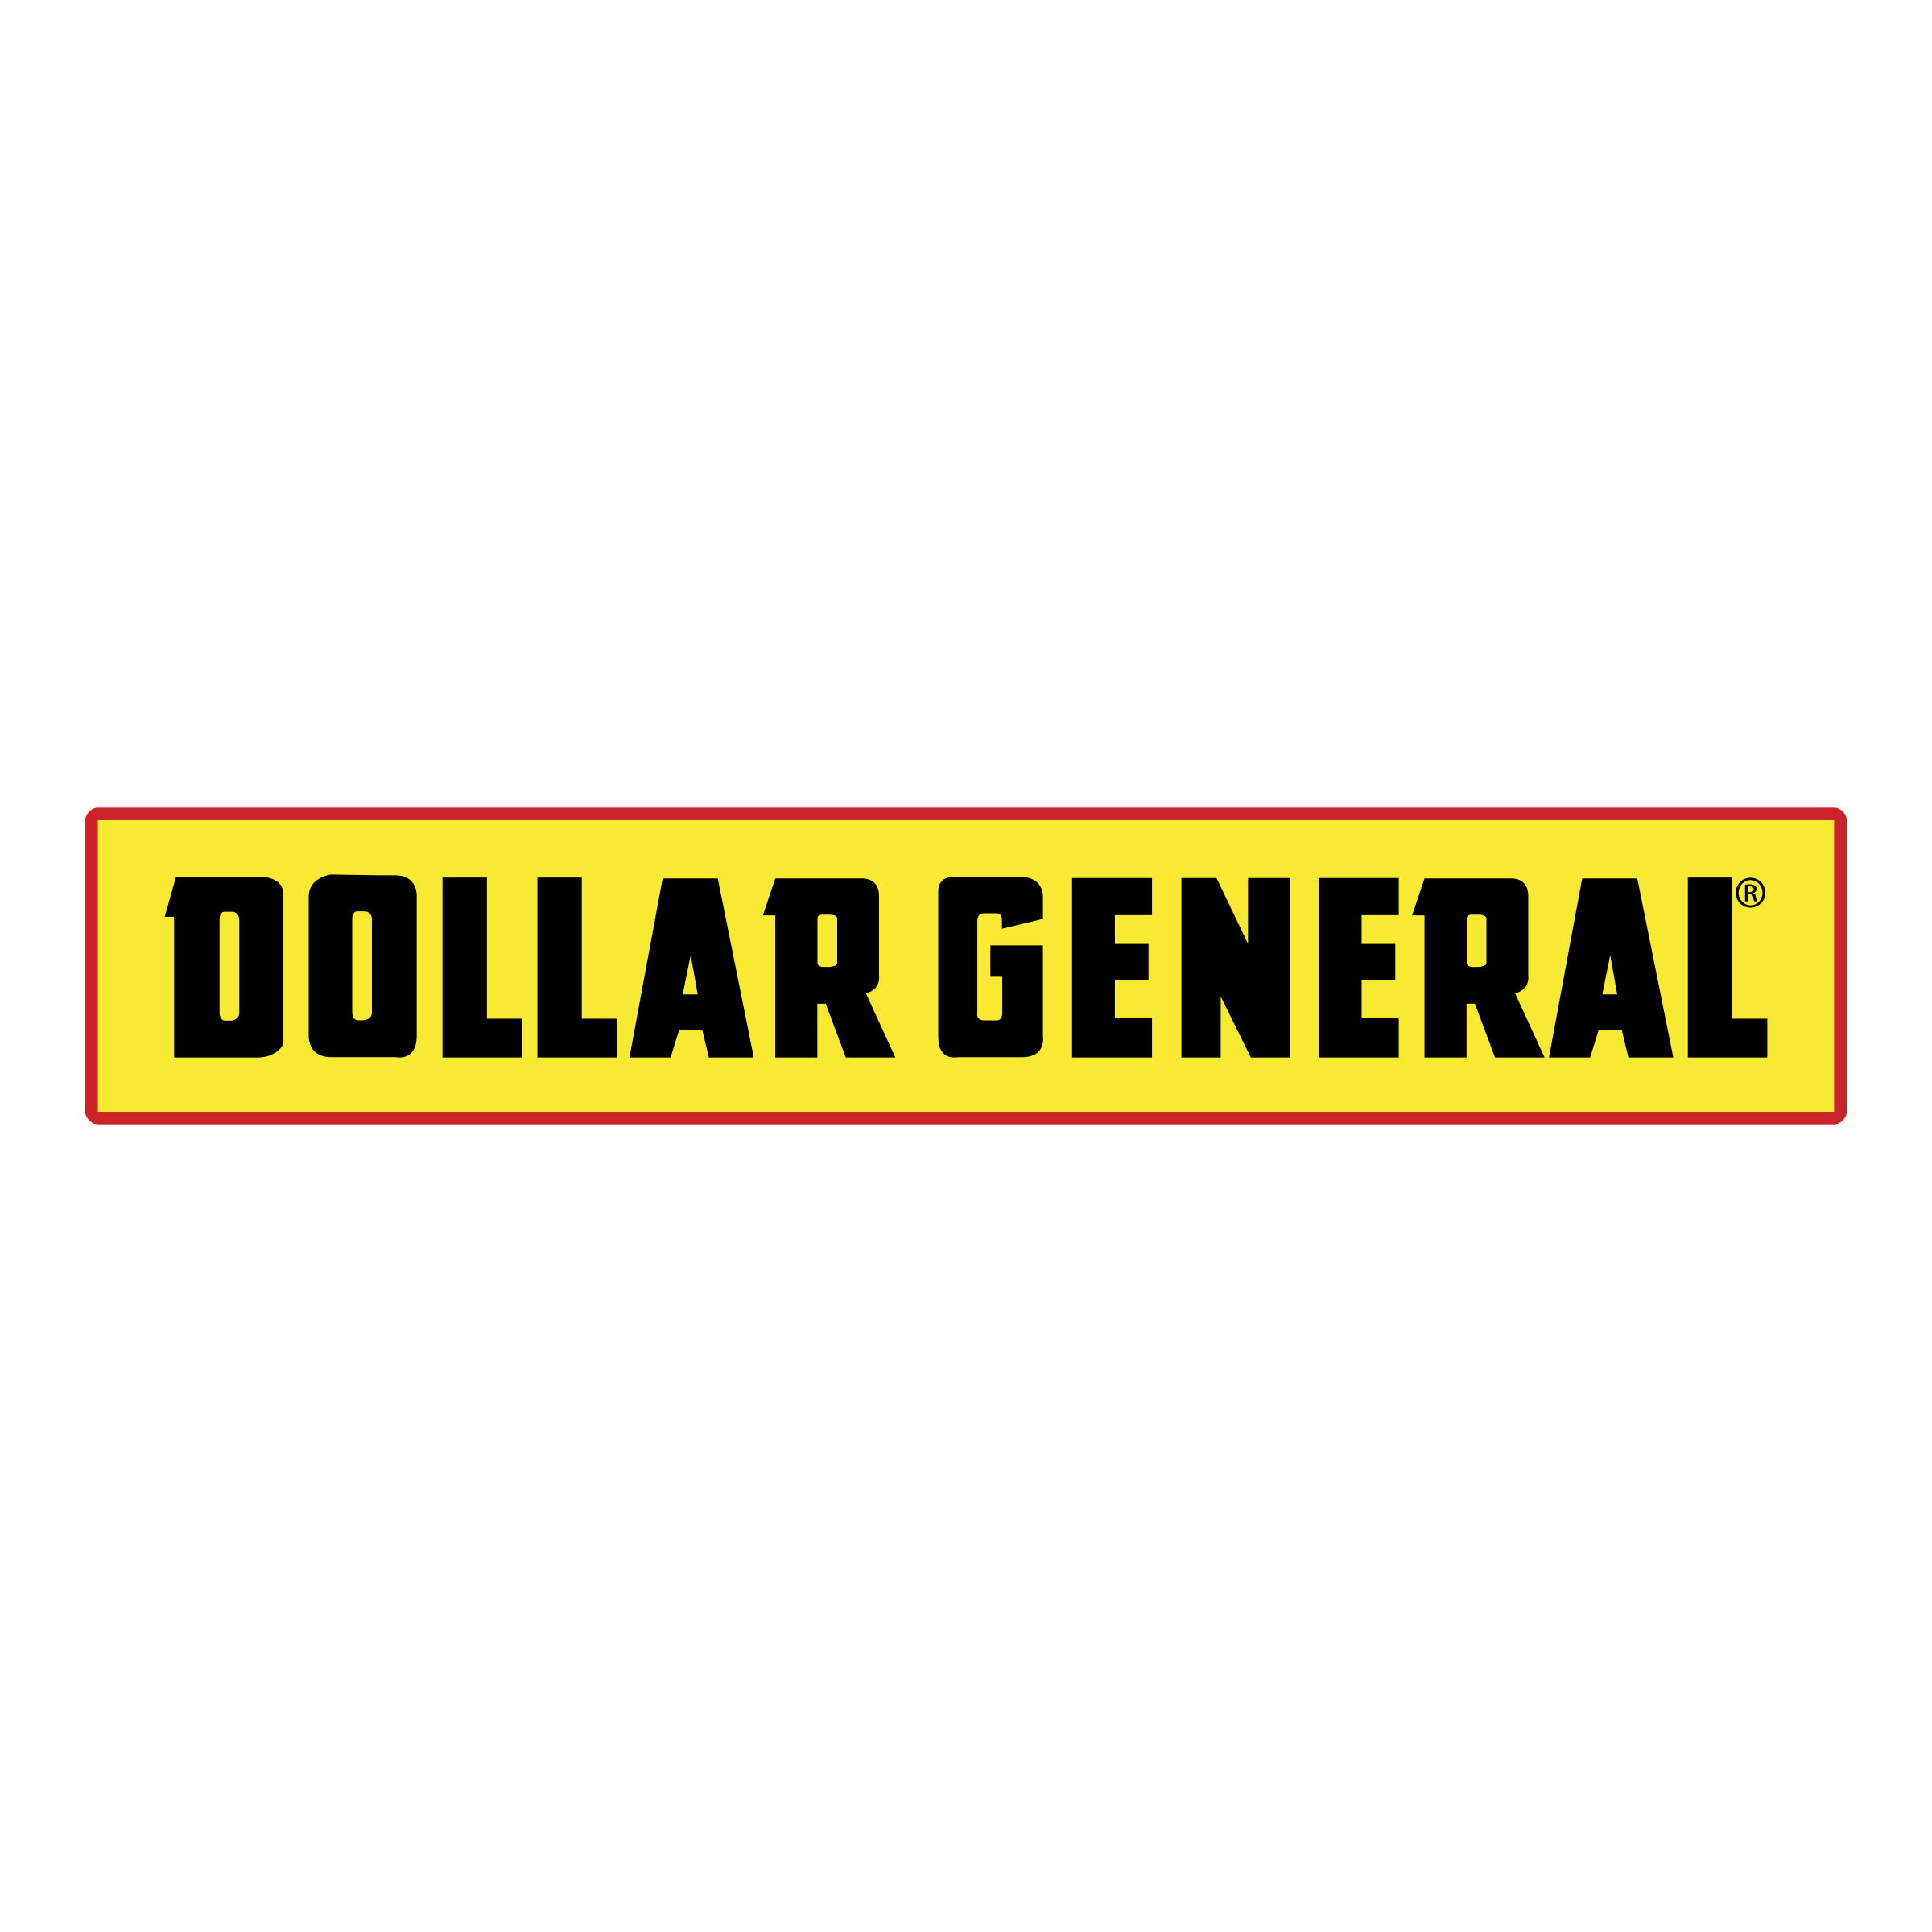 Dollar General Logo - Dollar General Logo PNG Transparent & SVG Vector